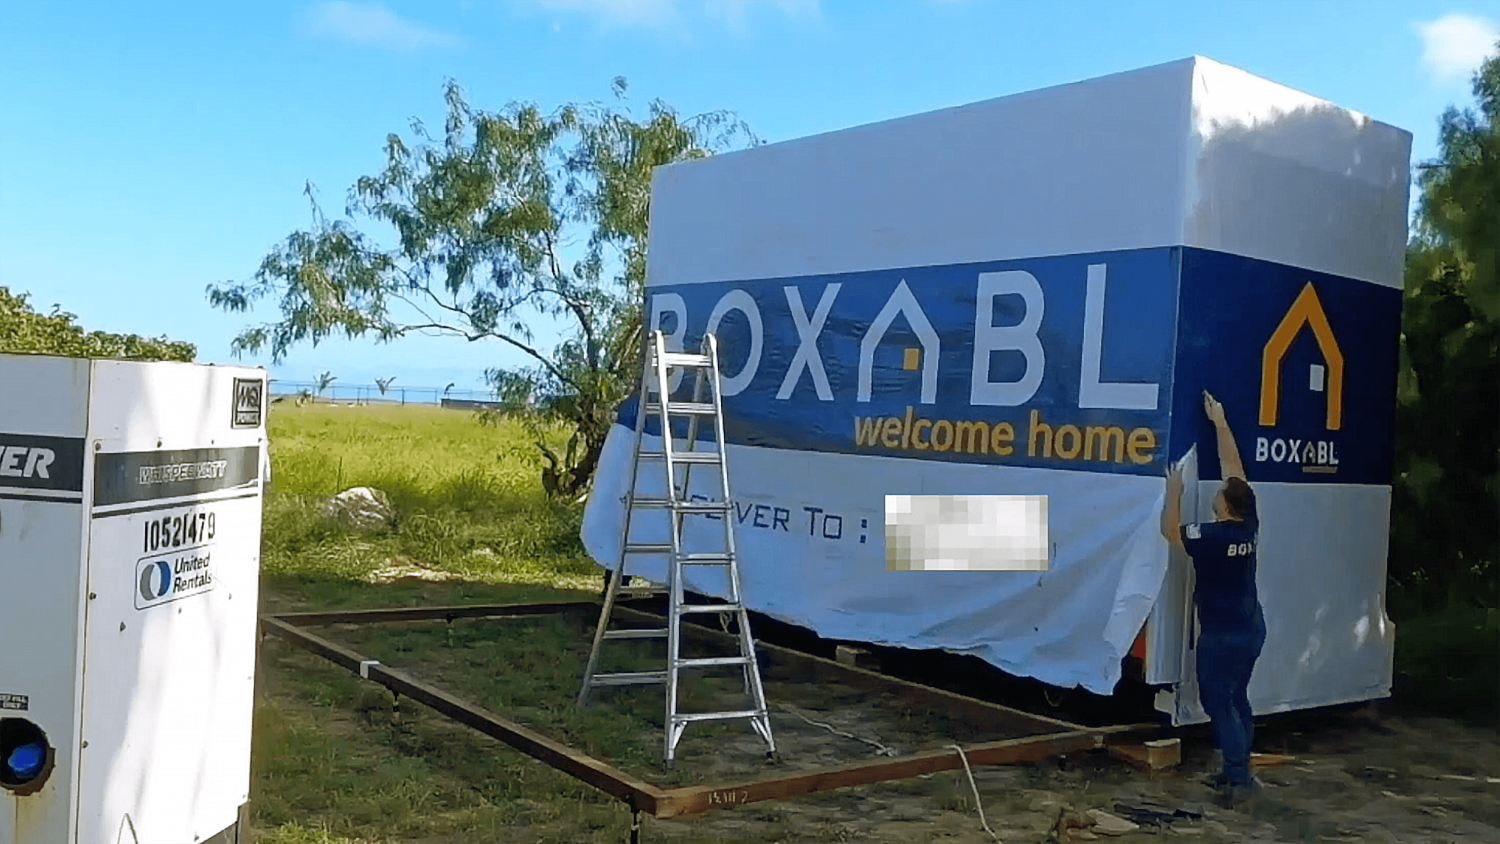 The Boxabl Casita | Elon Musk's Primary Home